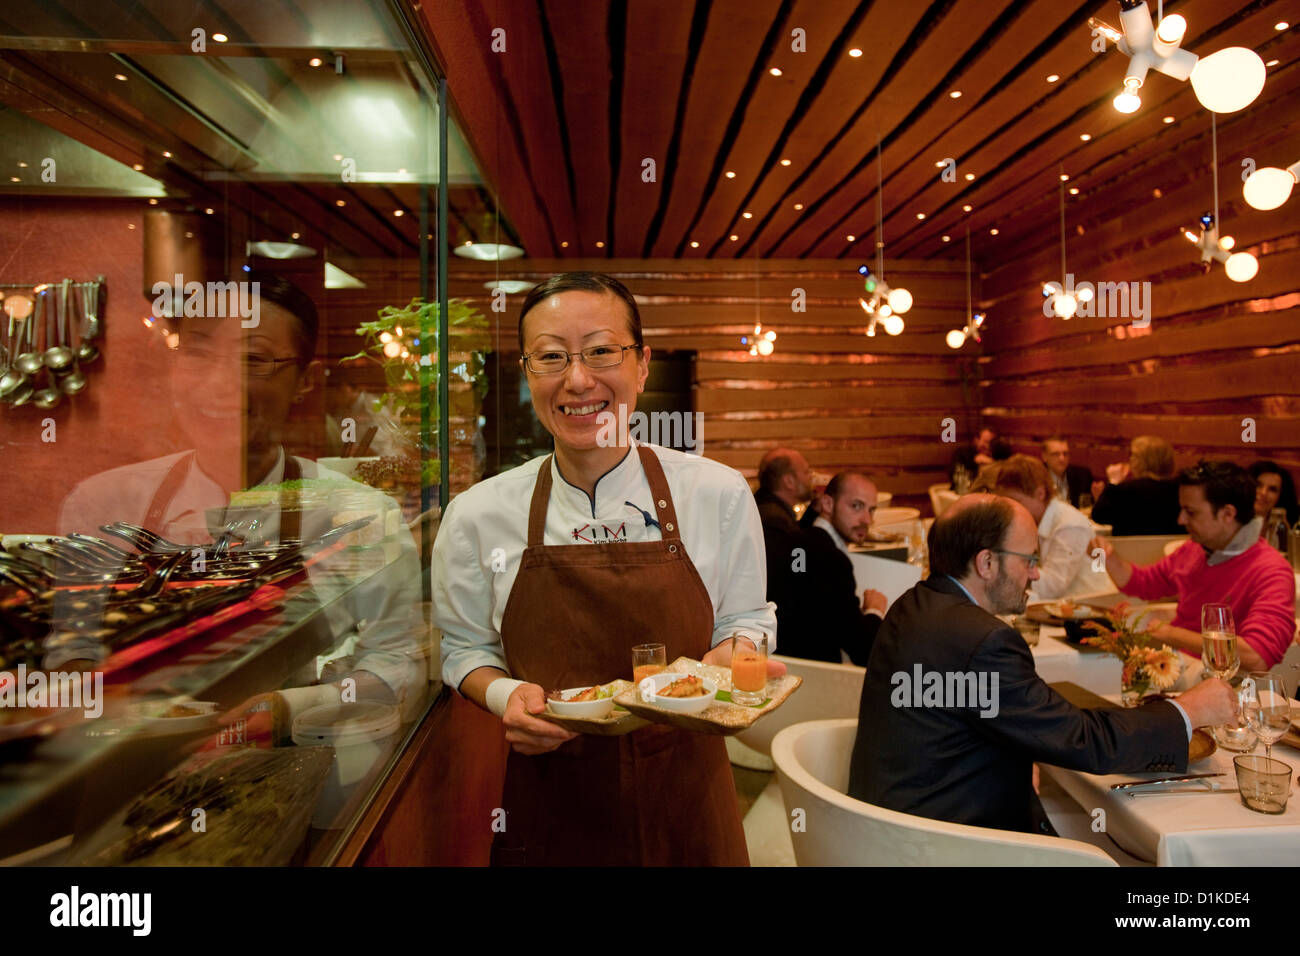 Österrreich, Wien 9, Lustkandlgasse 4, 'Kim kocht' asiatisch kreative Küche auf höchstem Niveau. Kim serviert persönlich. Stock Photo